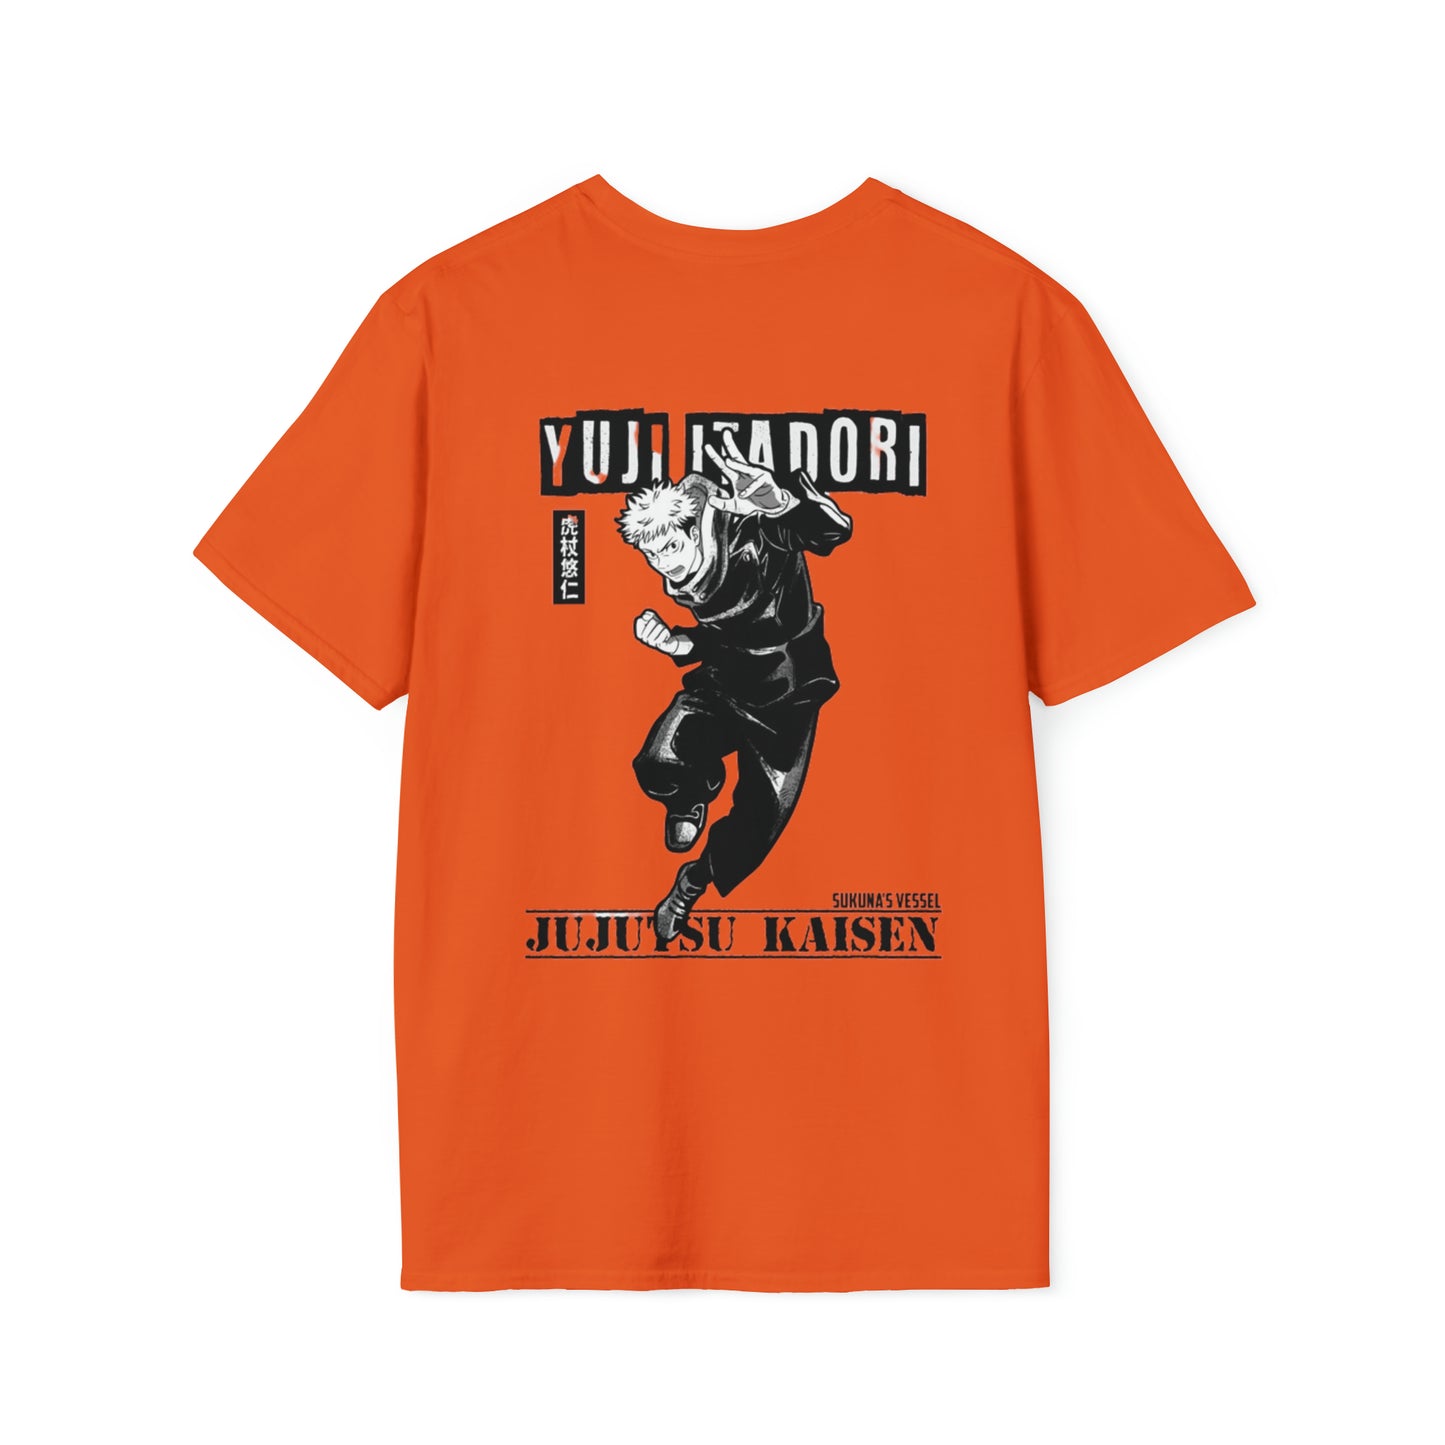 İtadori Yuji Unisex T-Shirt